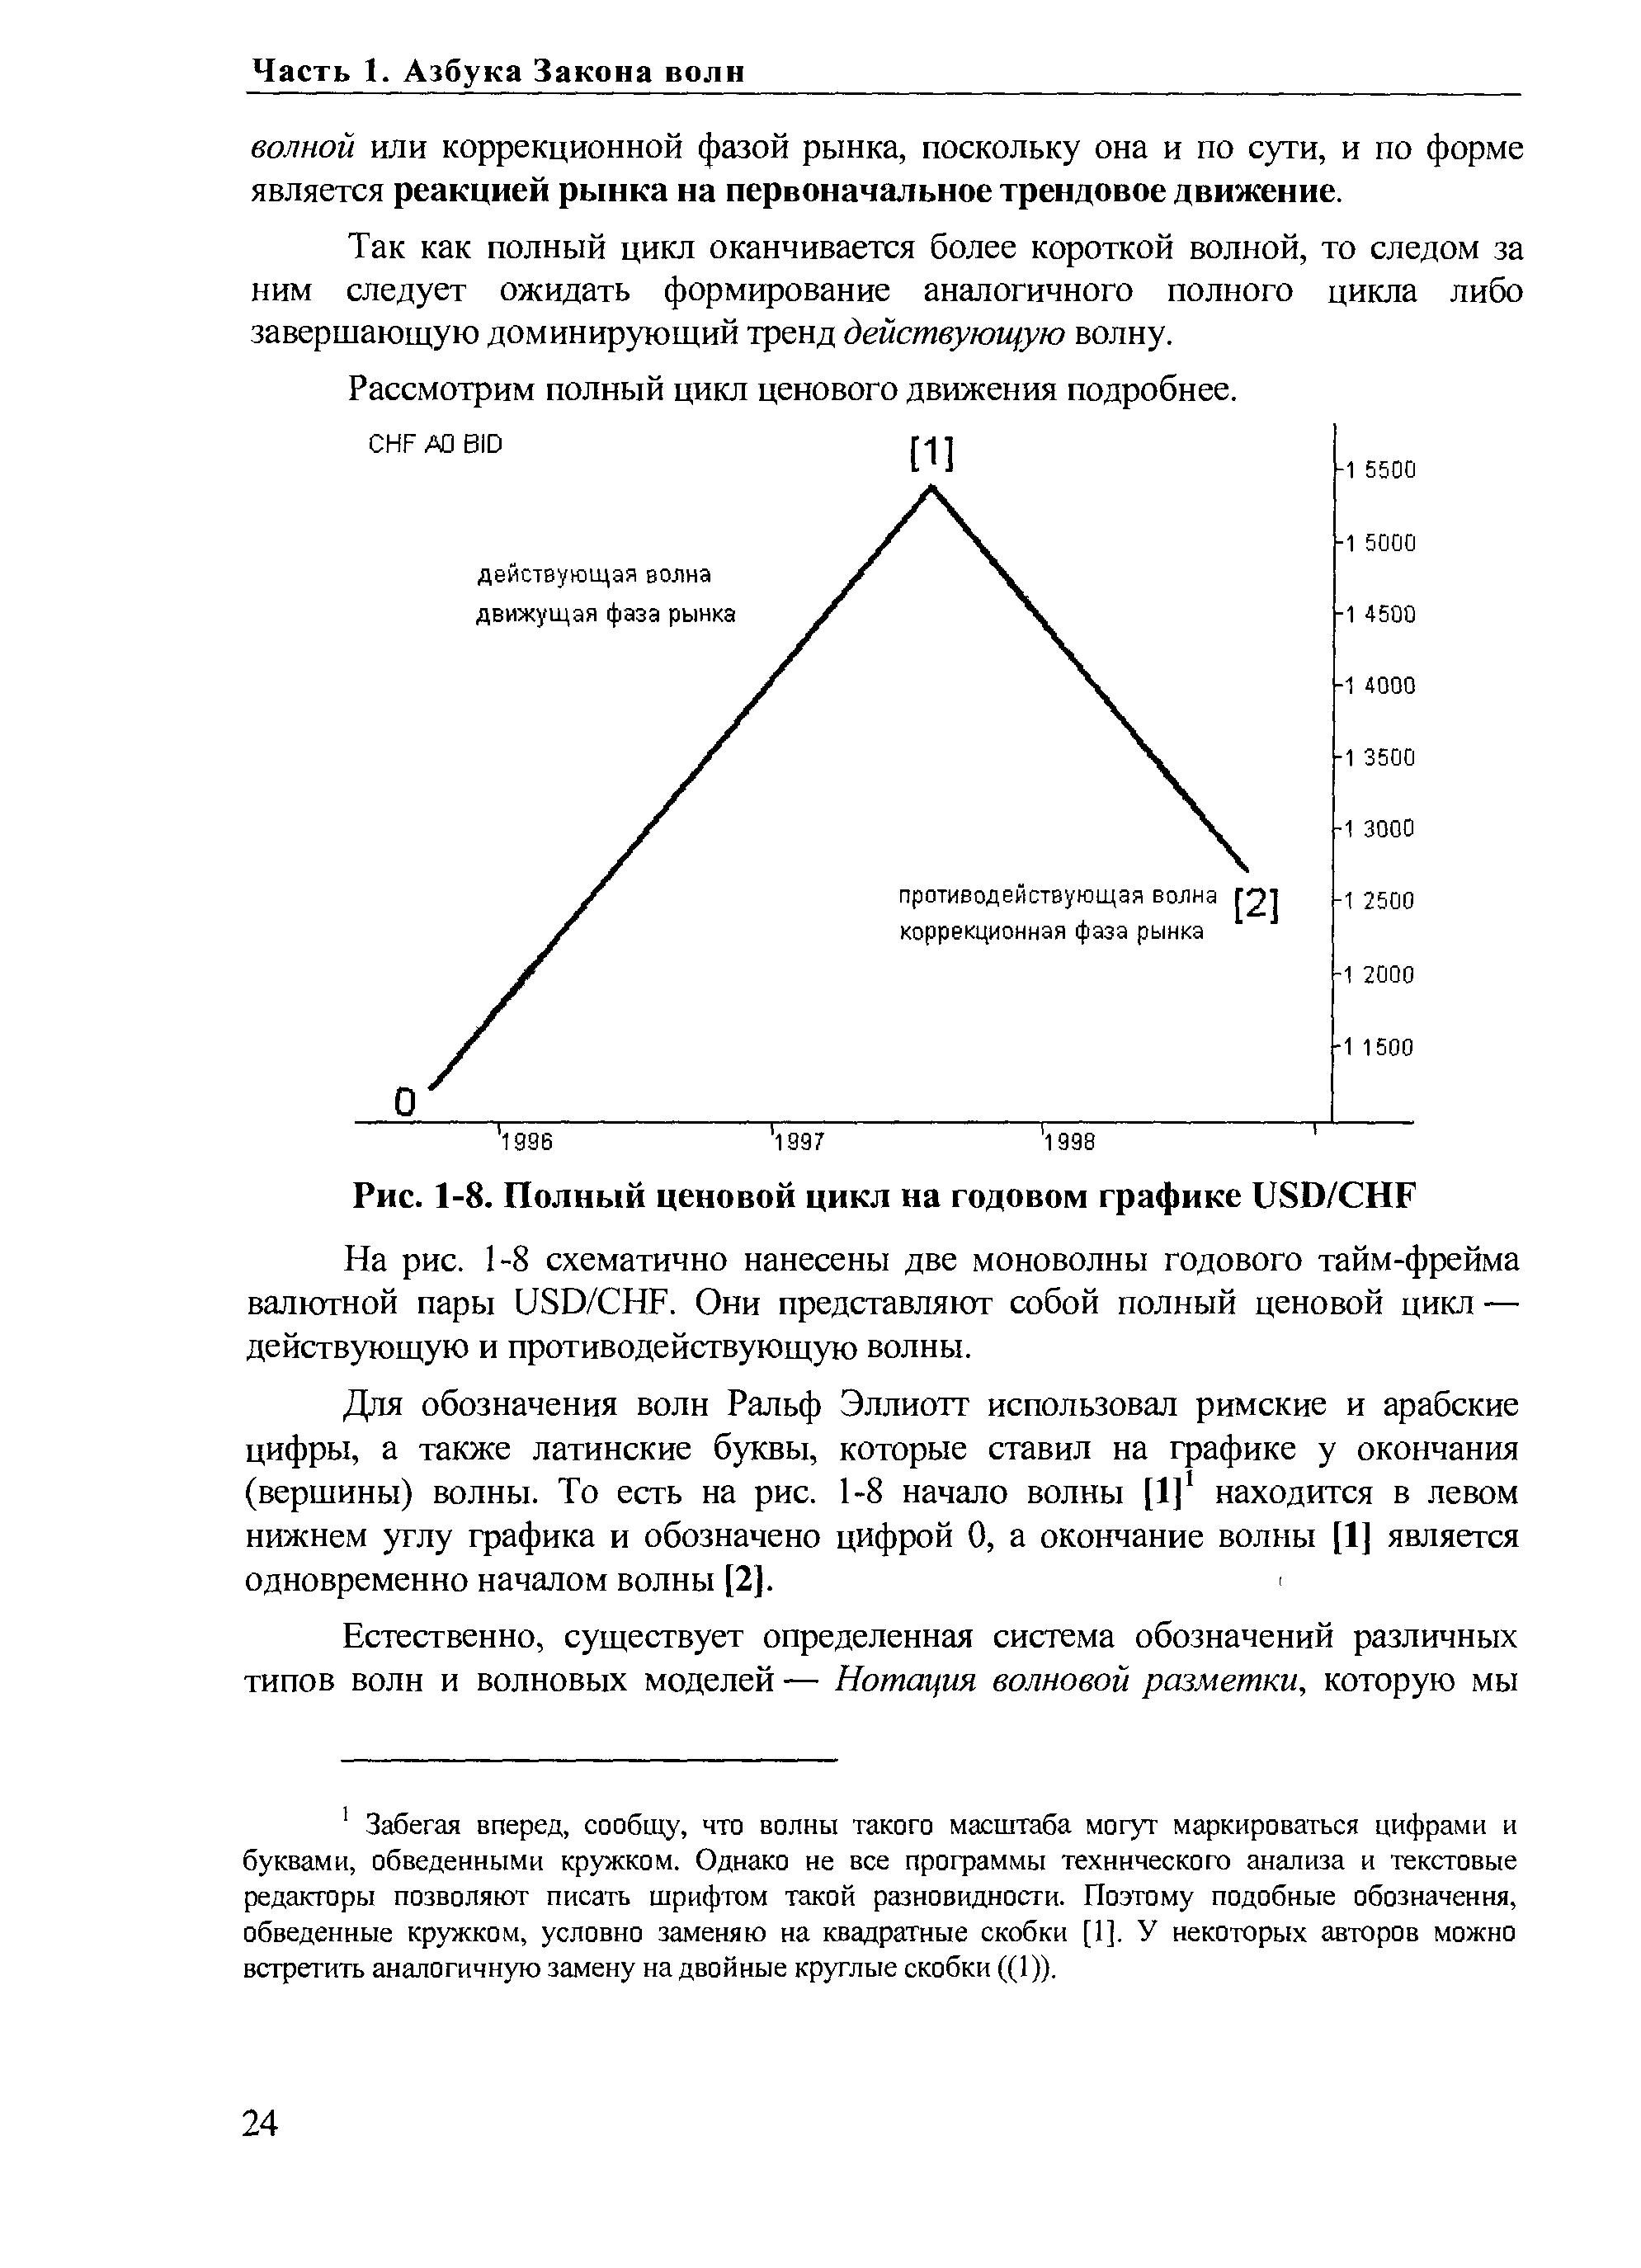 Рис. 1-8. Полный ценовой цикл на годовом графике USD/ HF
